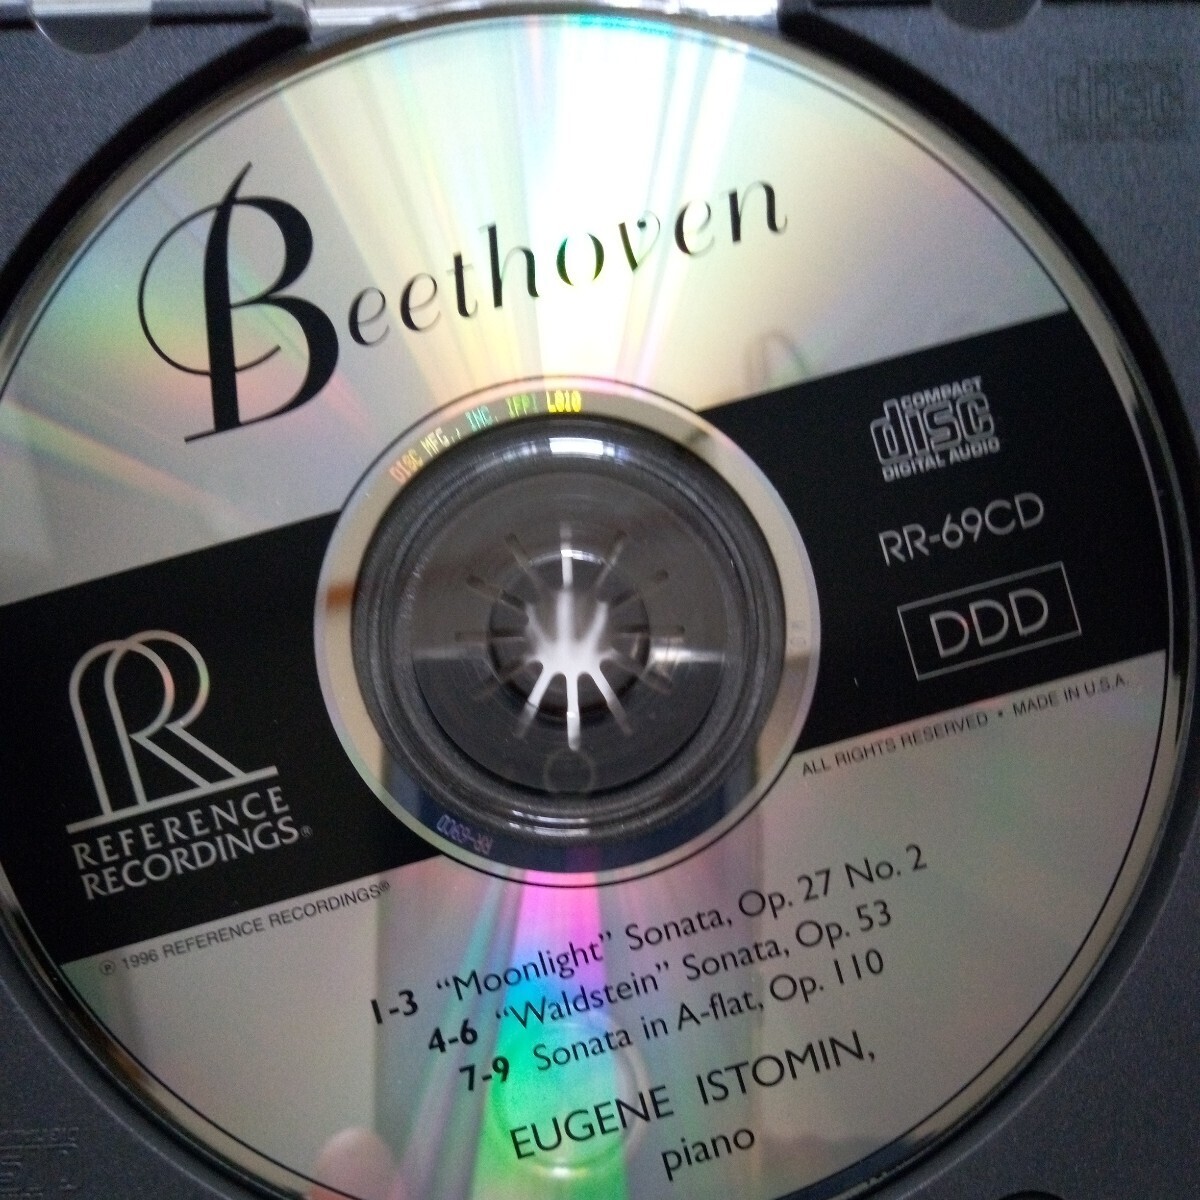 ベートーヴェン/ピアノソナタ第14番「月光」第21番「ワルトシュタイン」第31番 E.イストミン(P)リファレンスRR-69CD 美盤の画像2